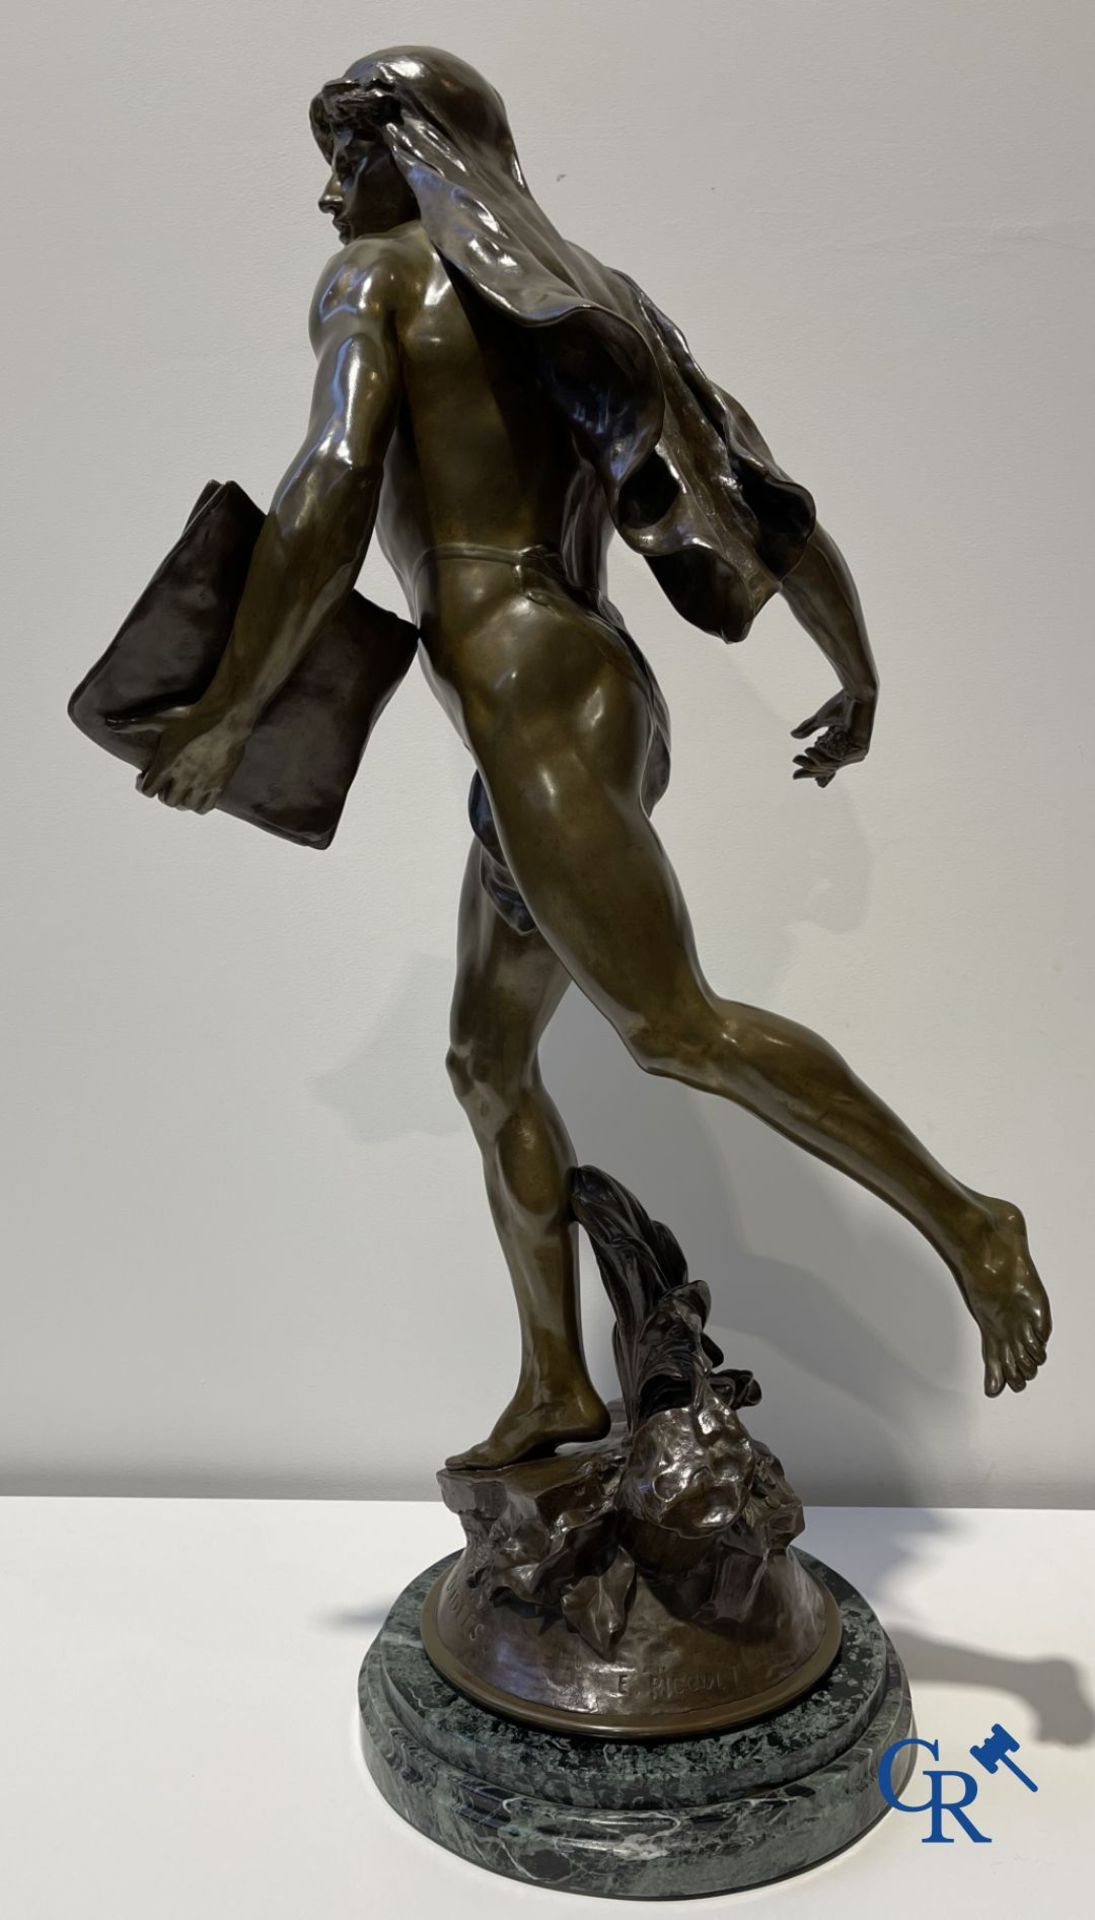 Emile Louis Picault (1833-1915) Large bronze statue "Le Semeur d'idées"
Foundry stamp Collin & Cie P - Bild 9 aus 16